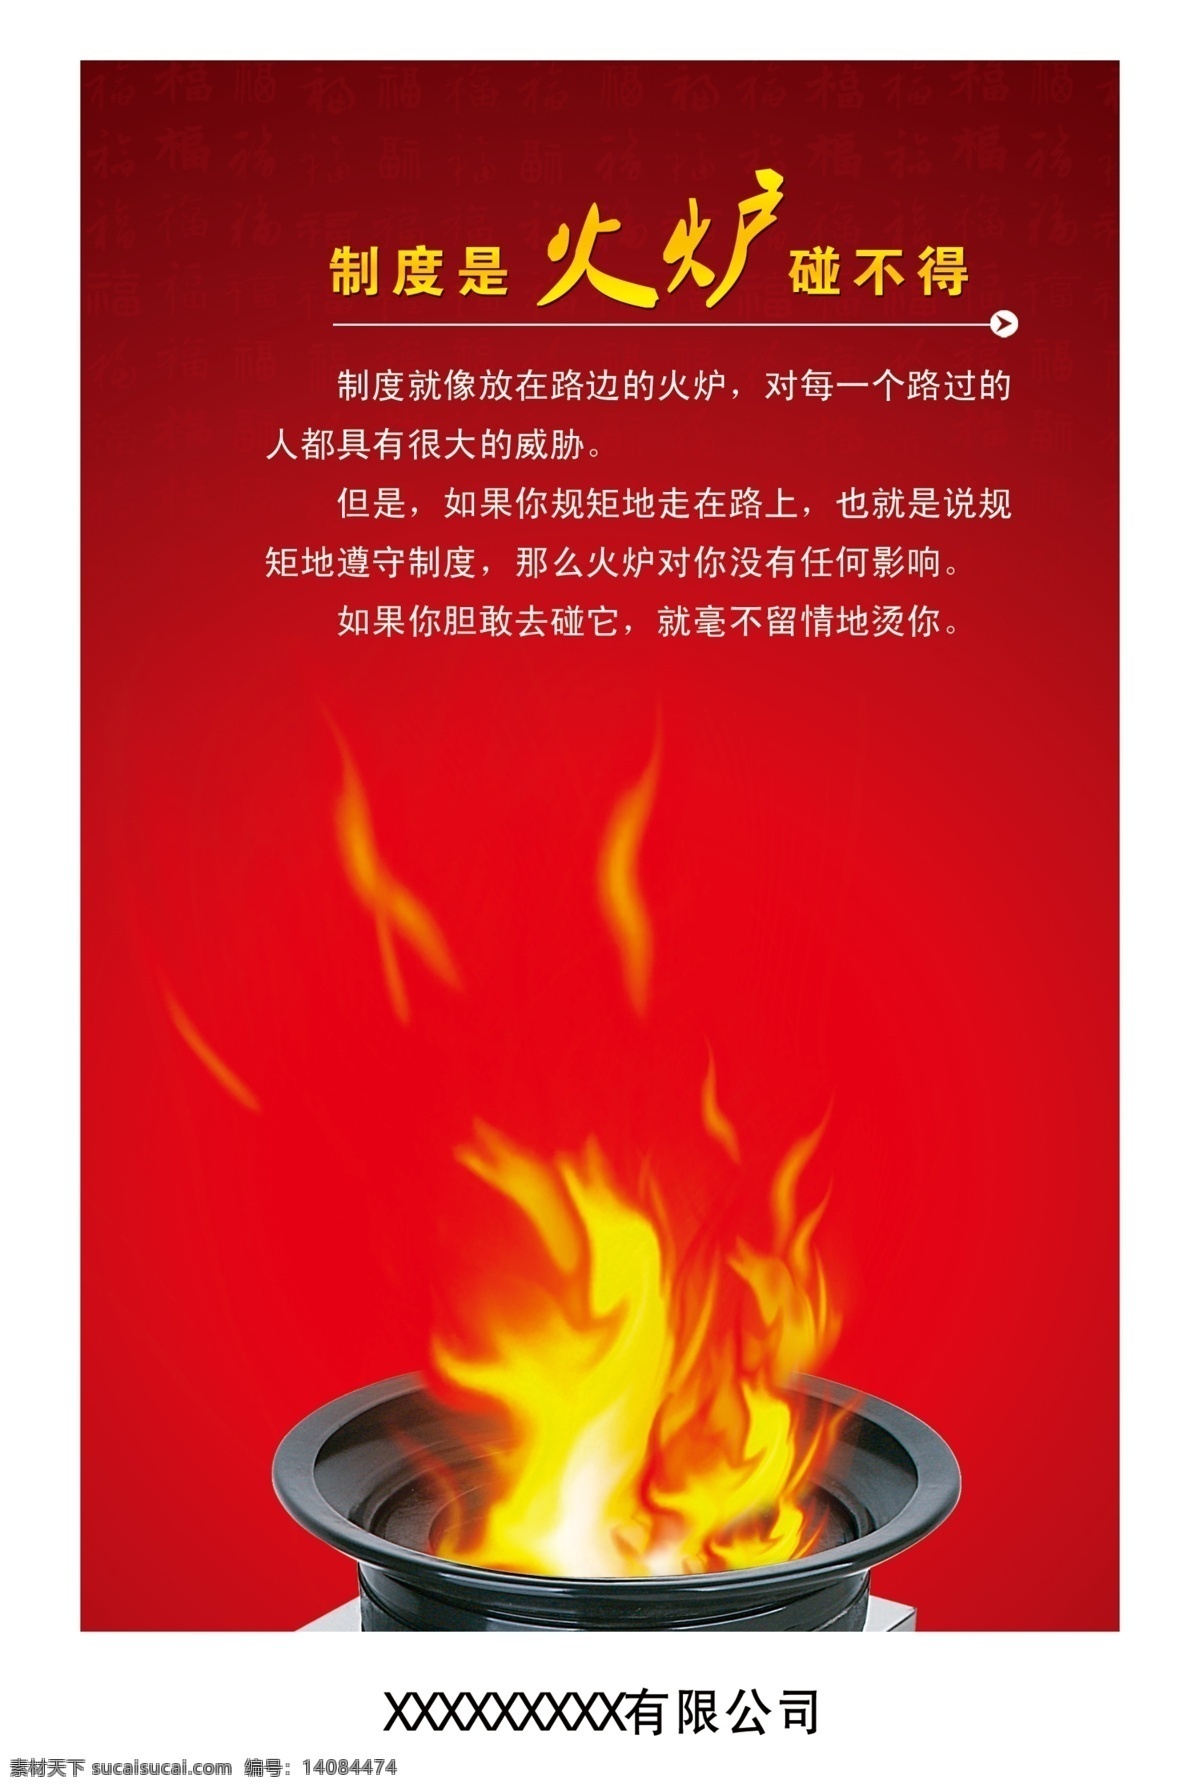 制度 火炉 碰 不得 文化 企业 简介 火 广告设计模板 源文件